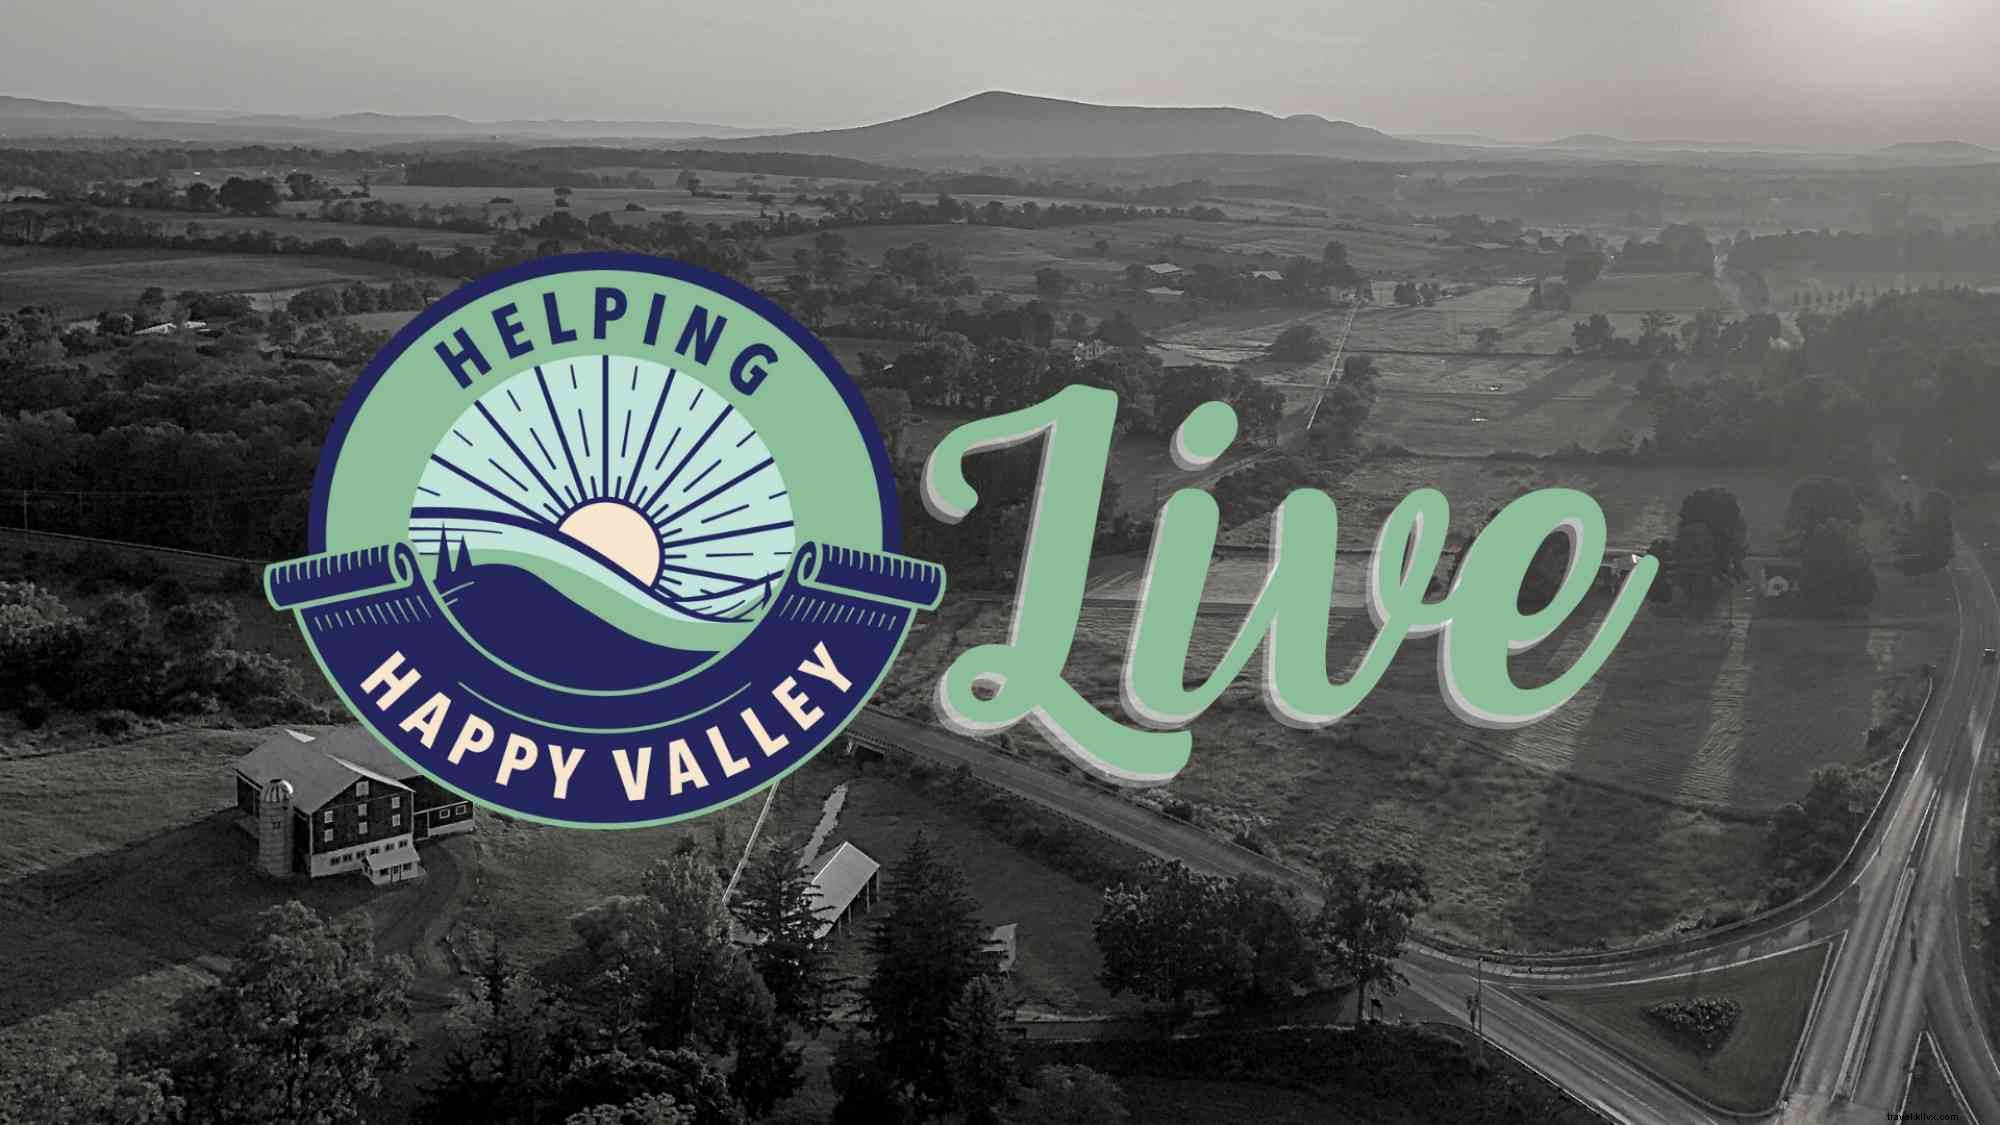 elping Happy Valley EN DIRECT 